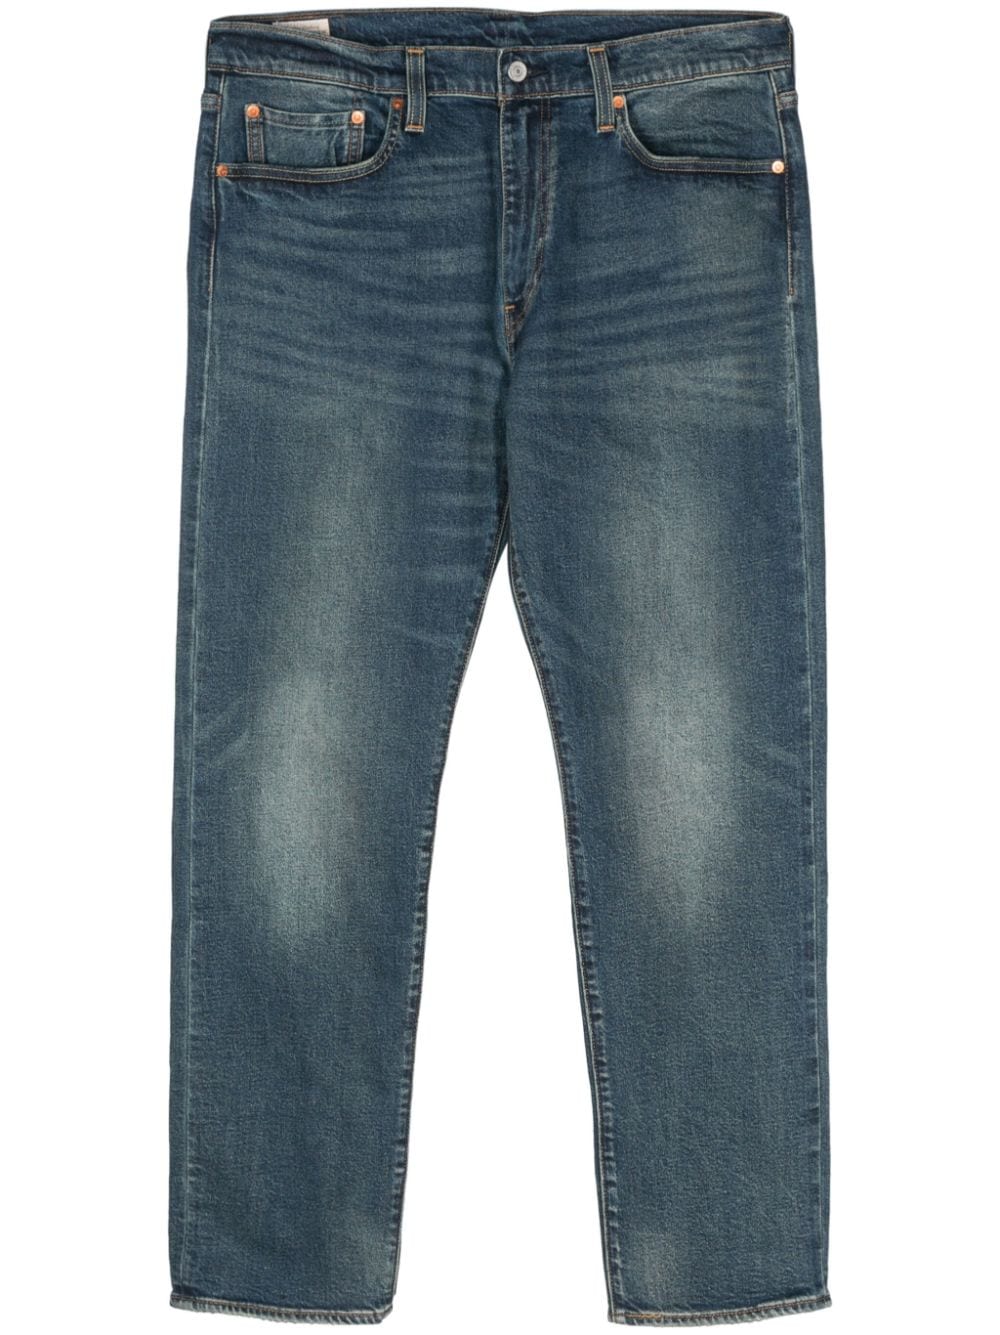 502 Taper jeans<BR/><BR/><BR/>